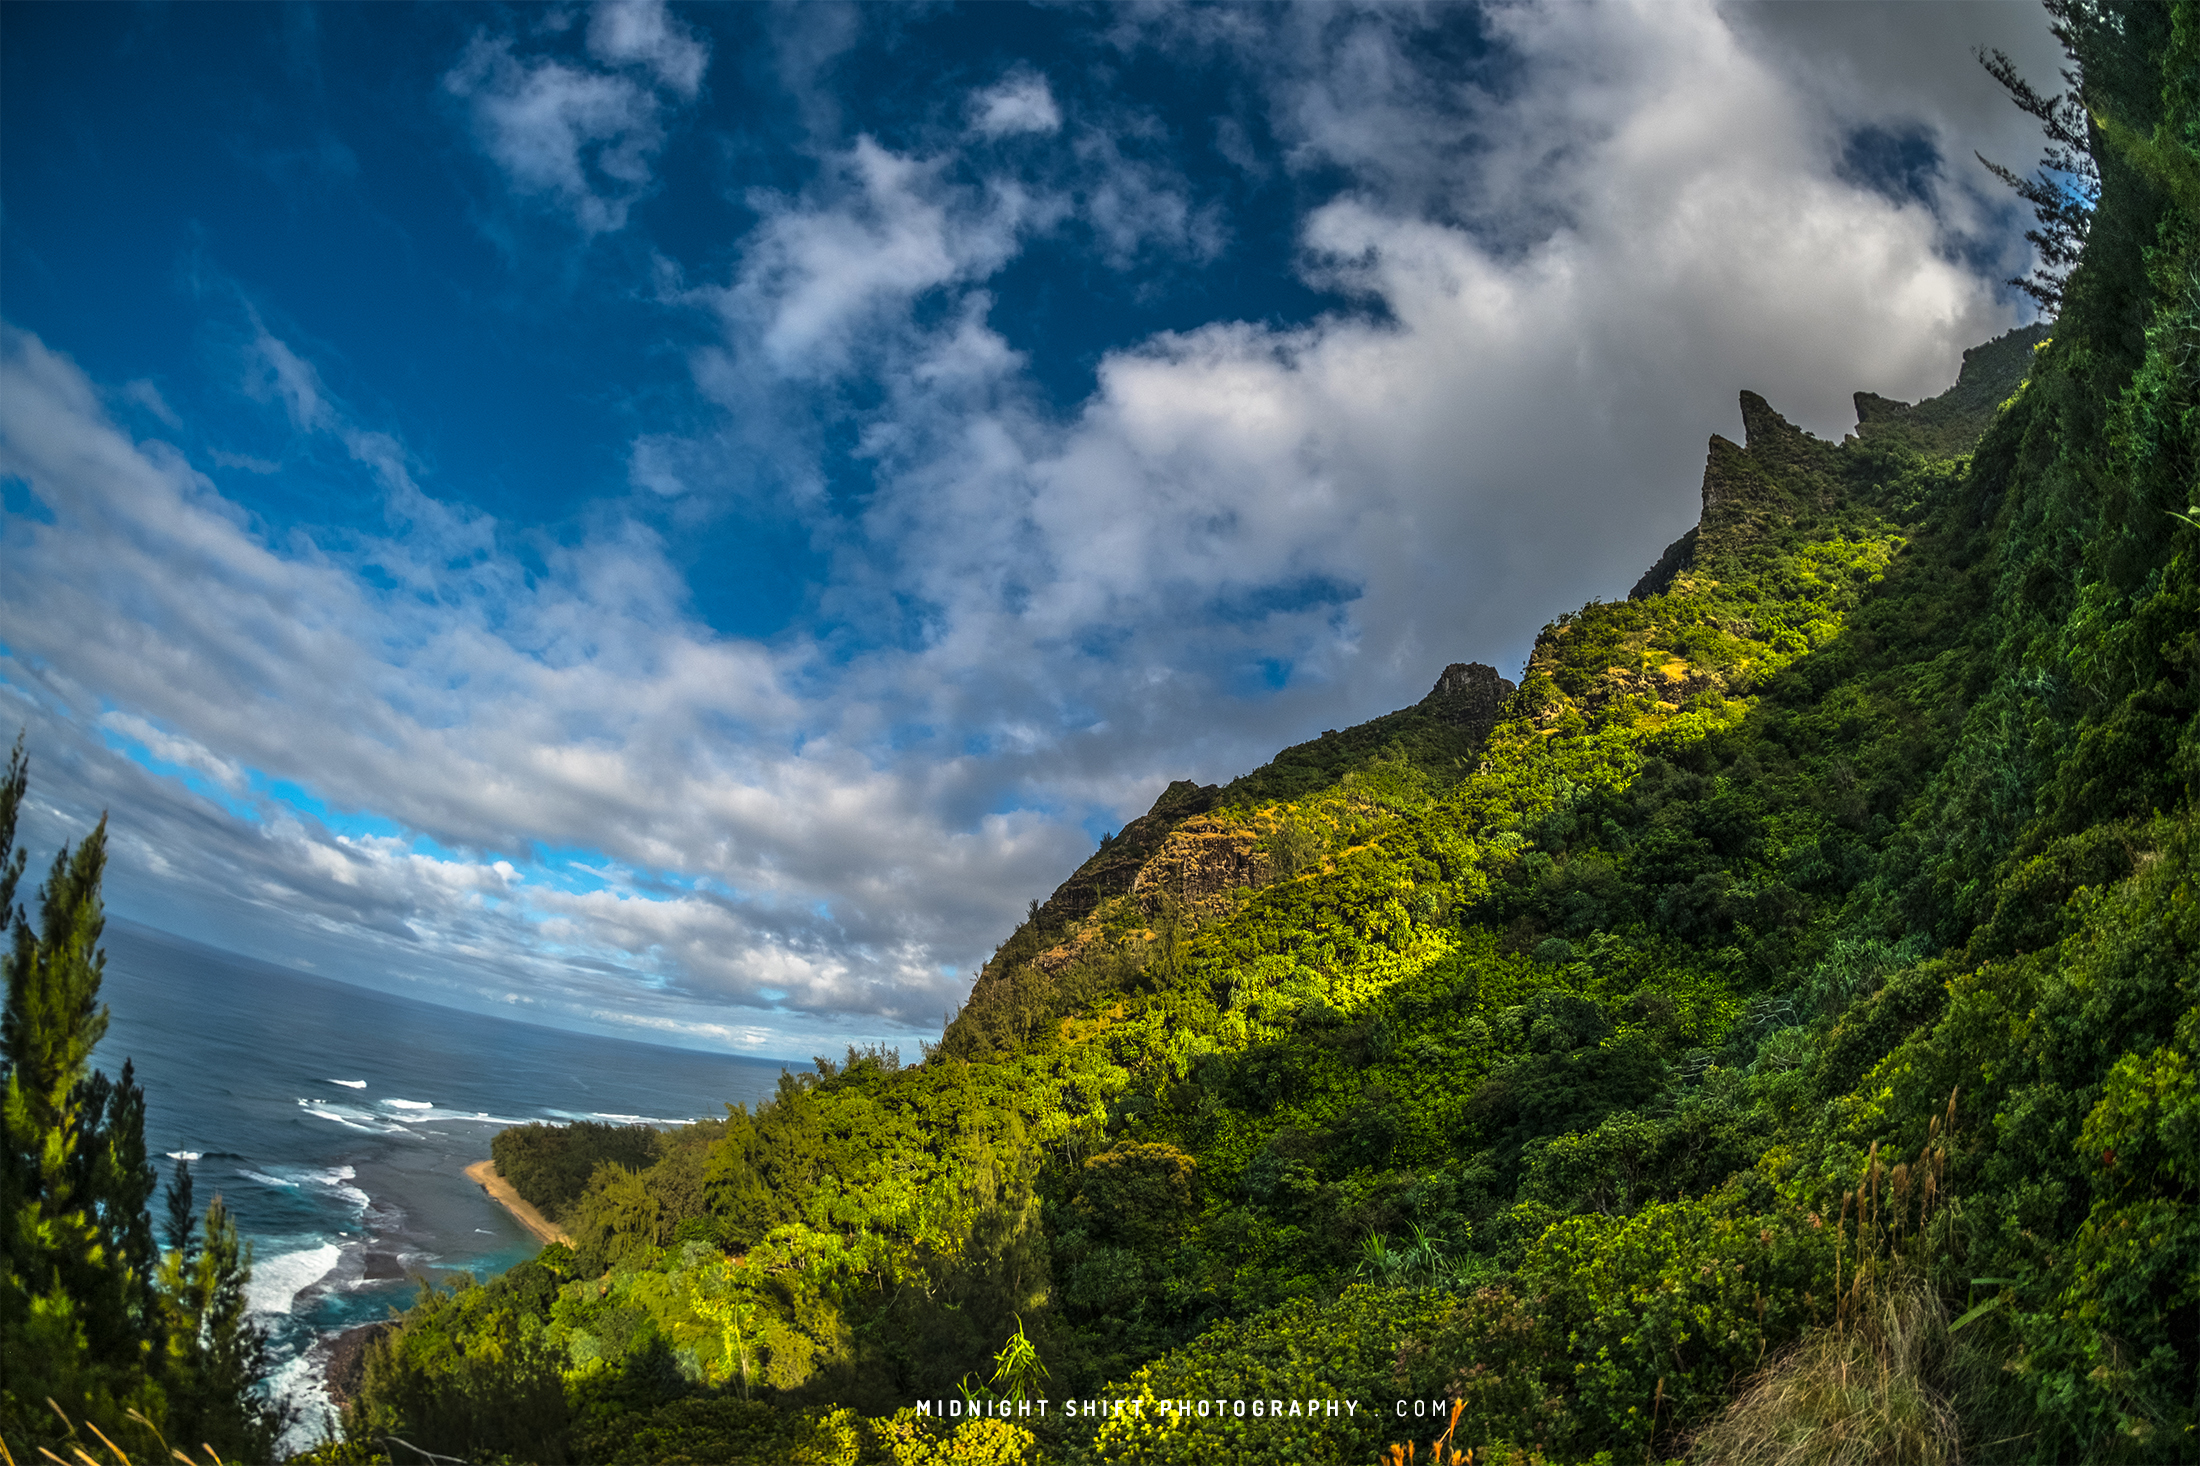 The Nā Pali Coast as seen from the Kalalau Trail on the island of Kauai, Hawaii.